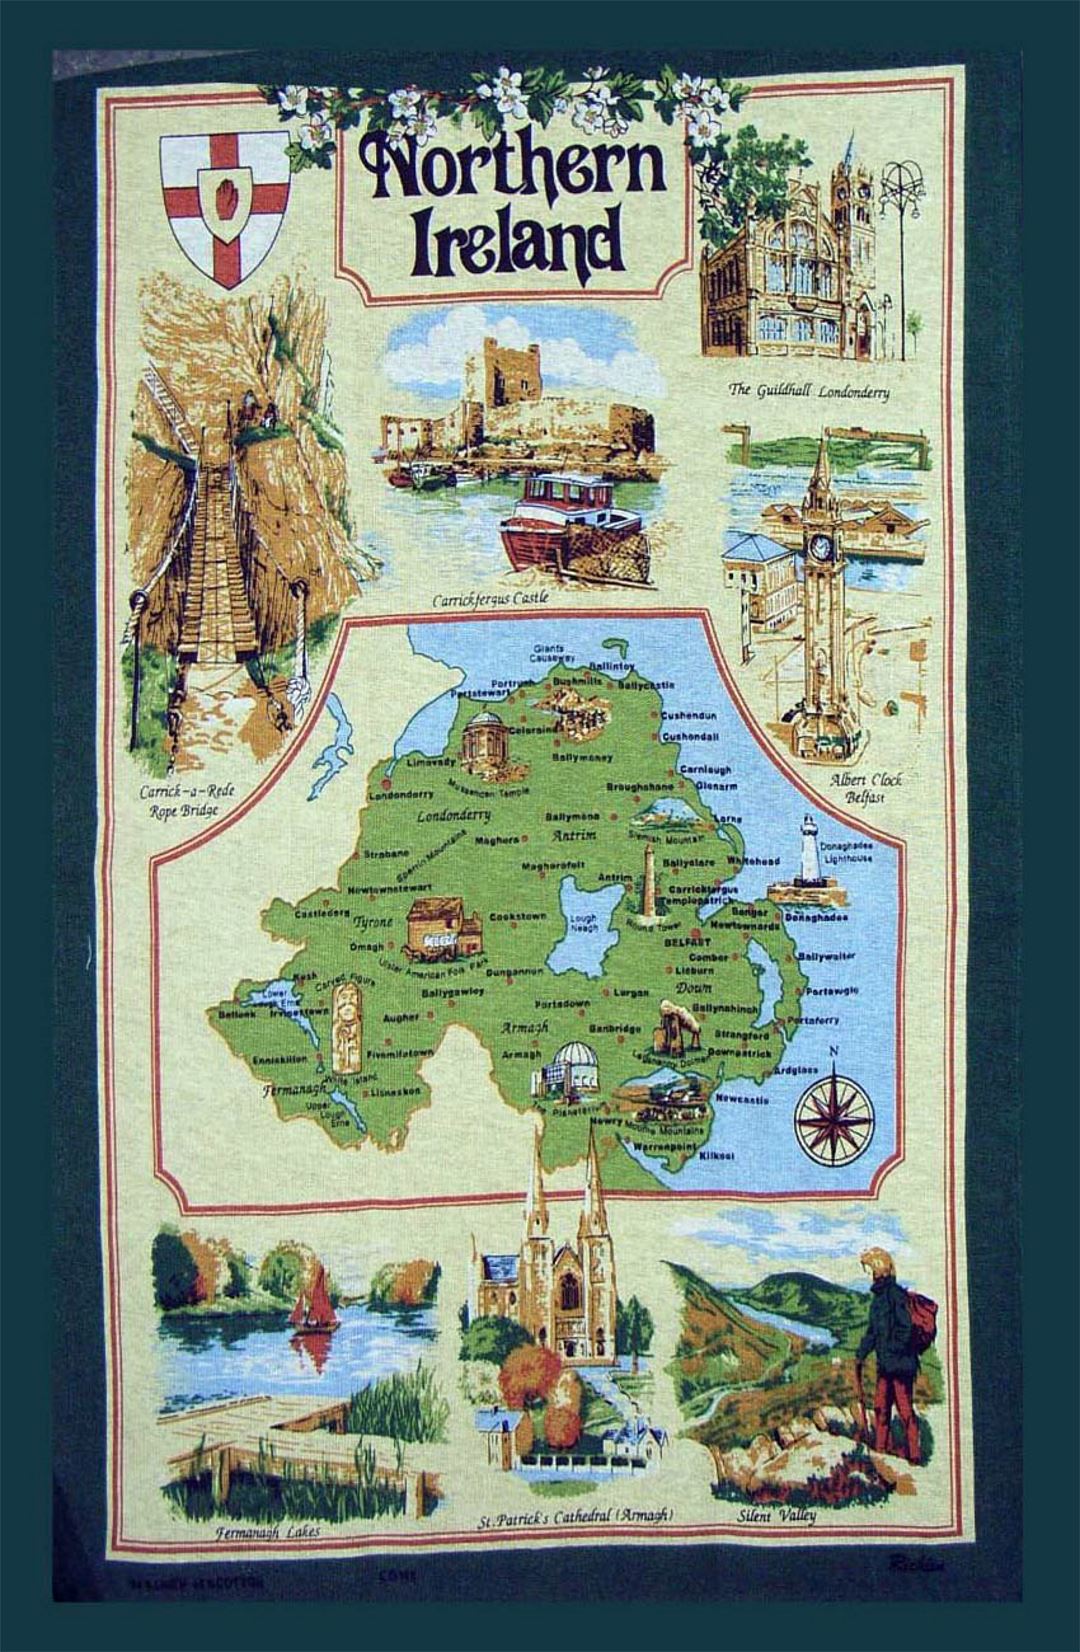 Detallado mapa turístico de Irlanda del Norte